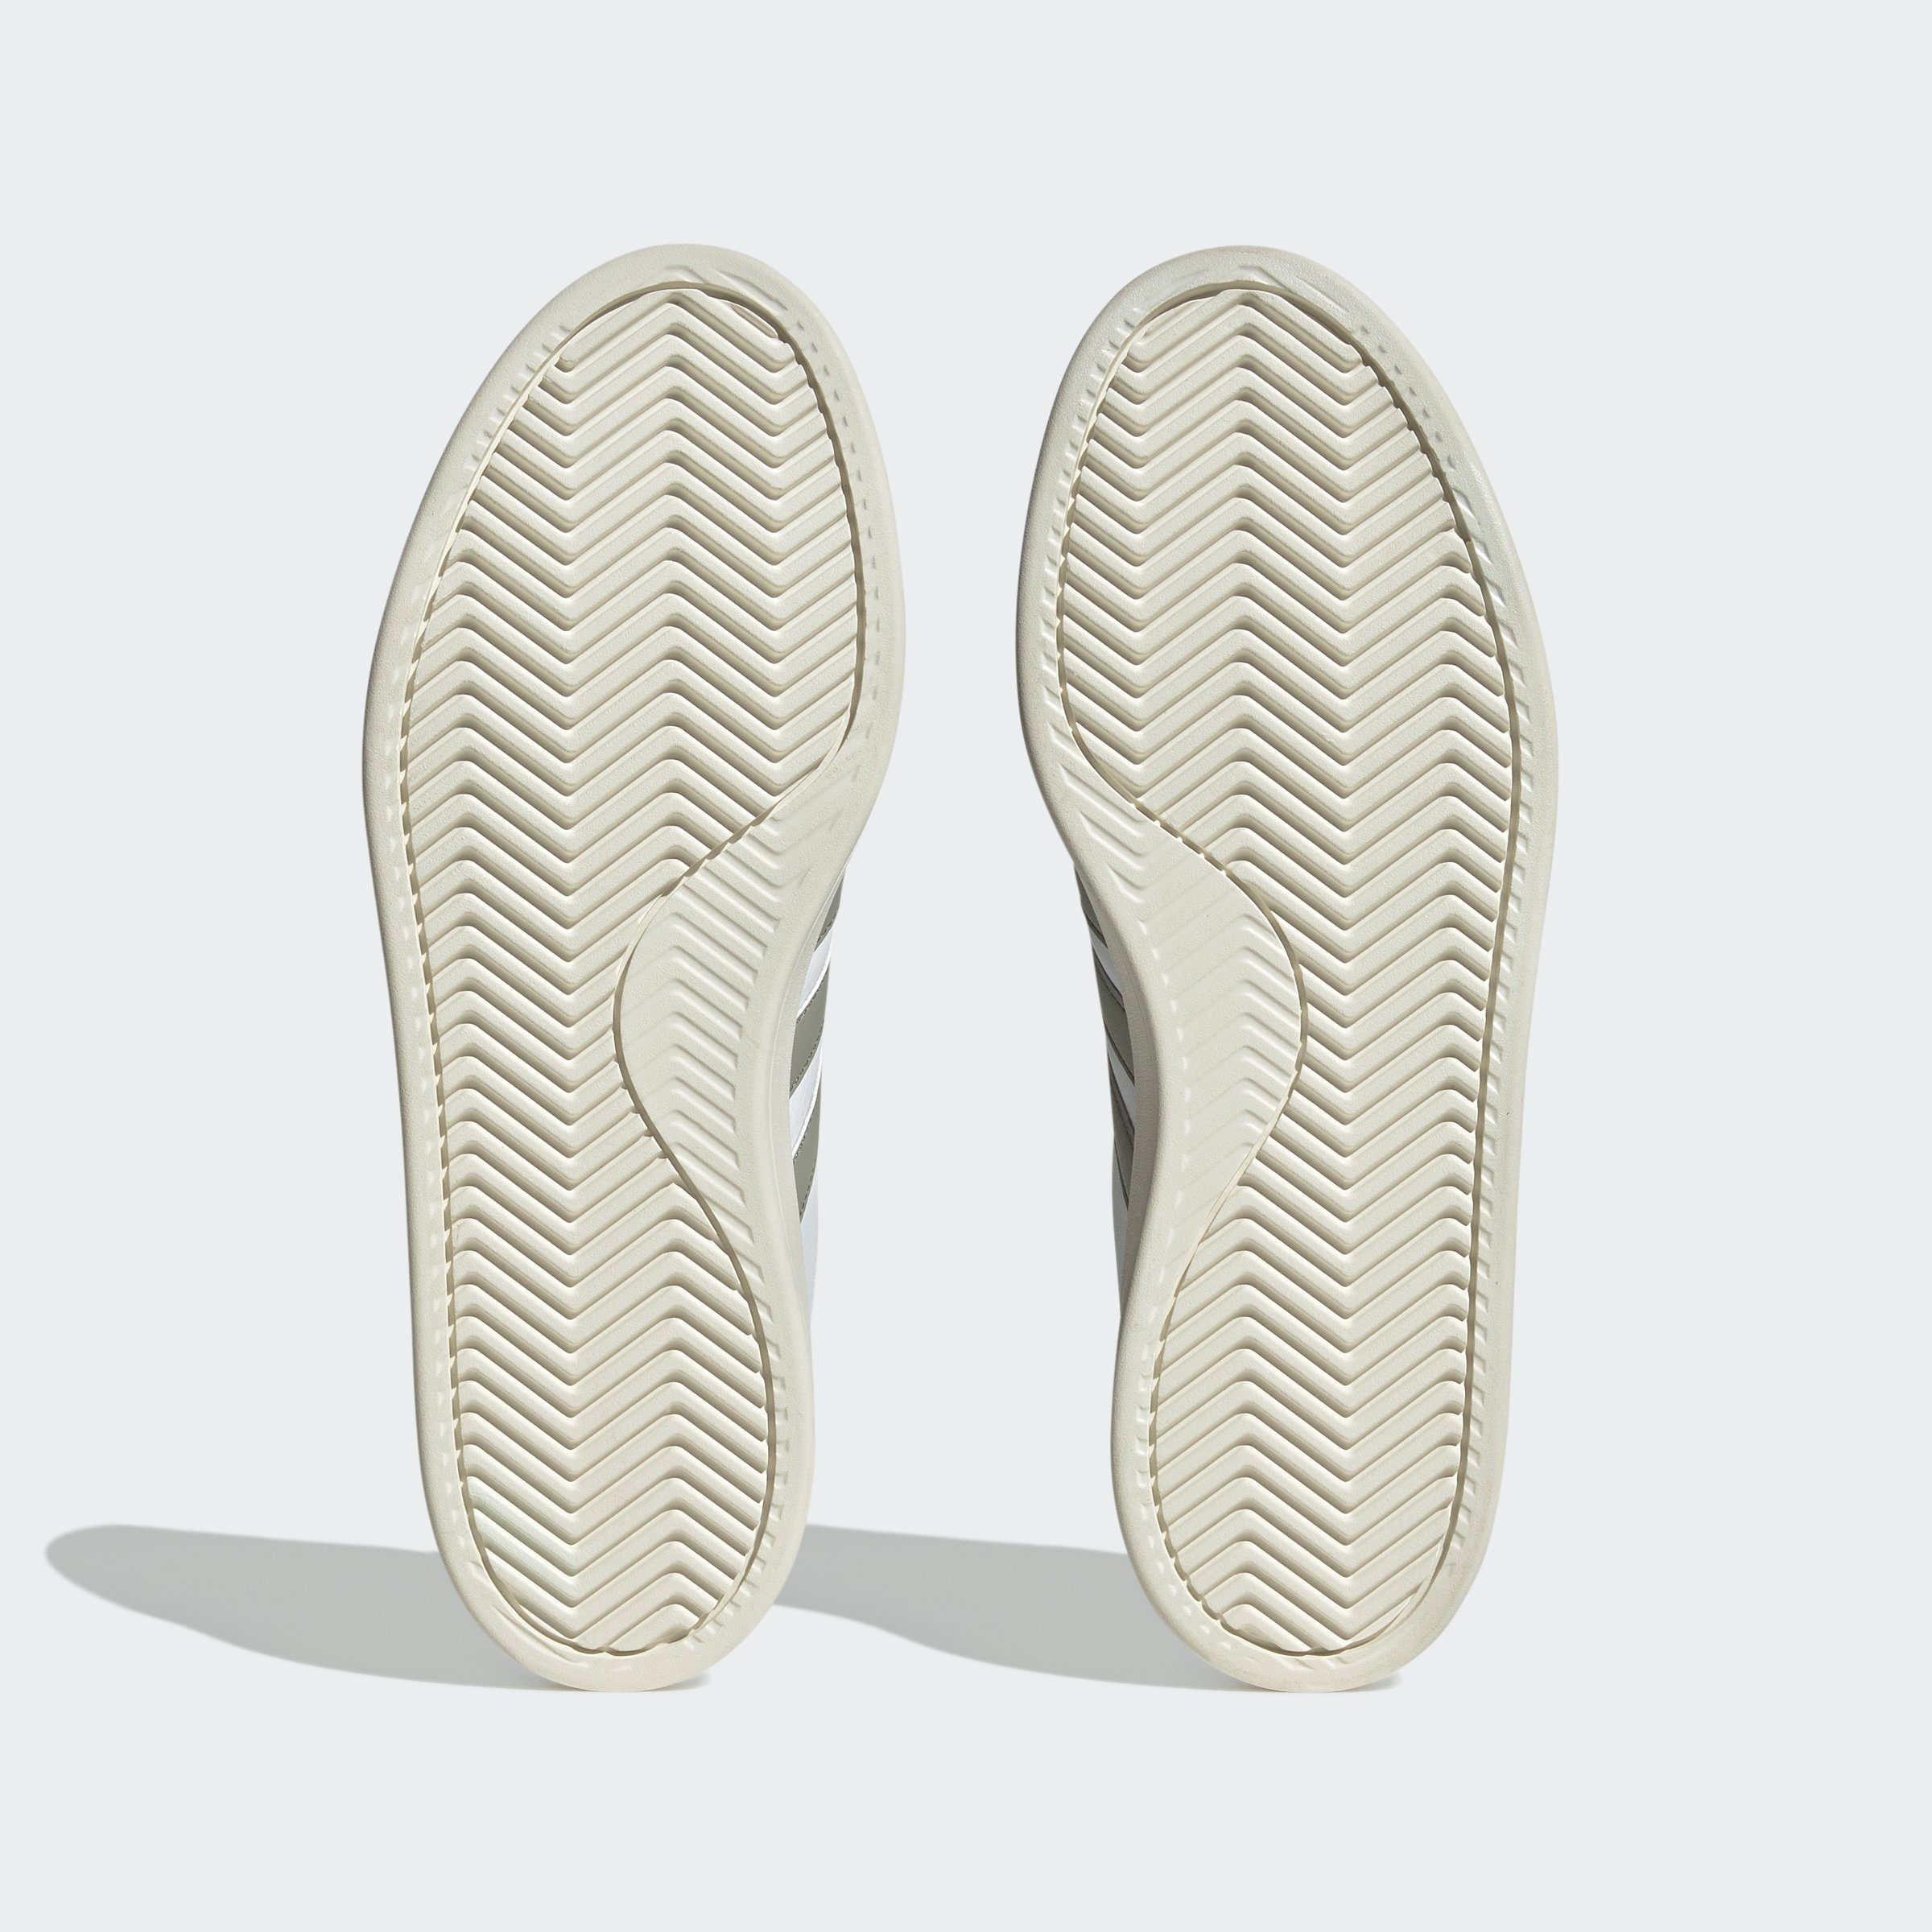 Cloud den auf GRAND CLOUDFOAM Superstar / Spuren Sportswear Sneaker Pebble adidas des COURT White Design Silver / Wonder adidas COMFORT Beige